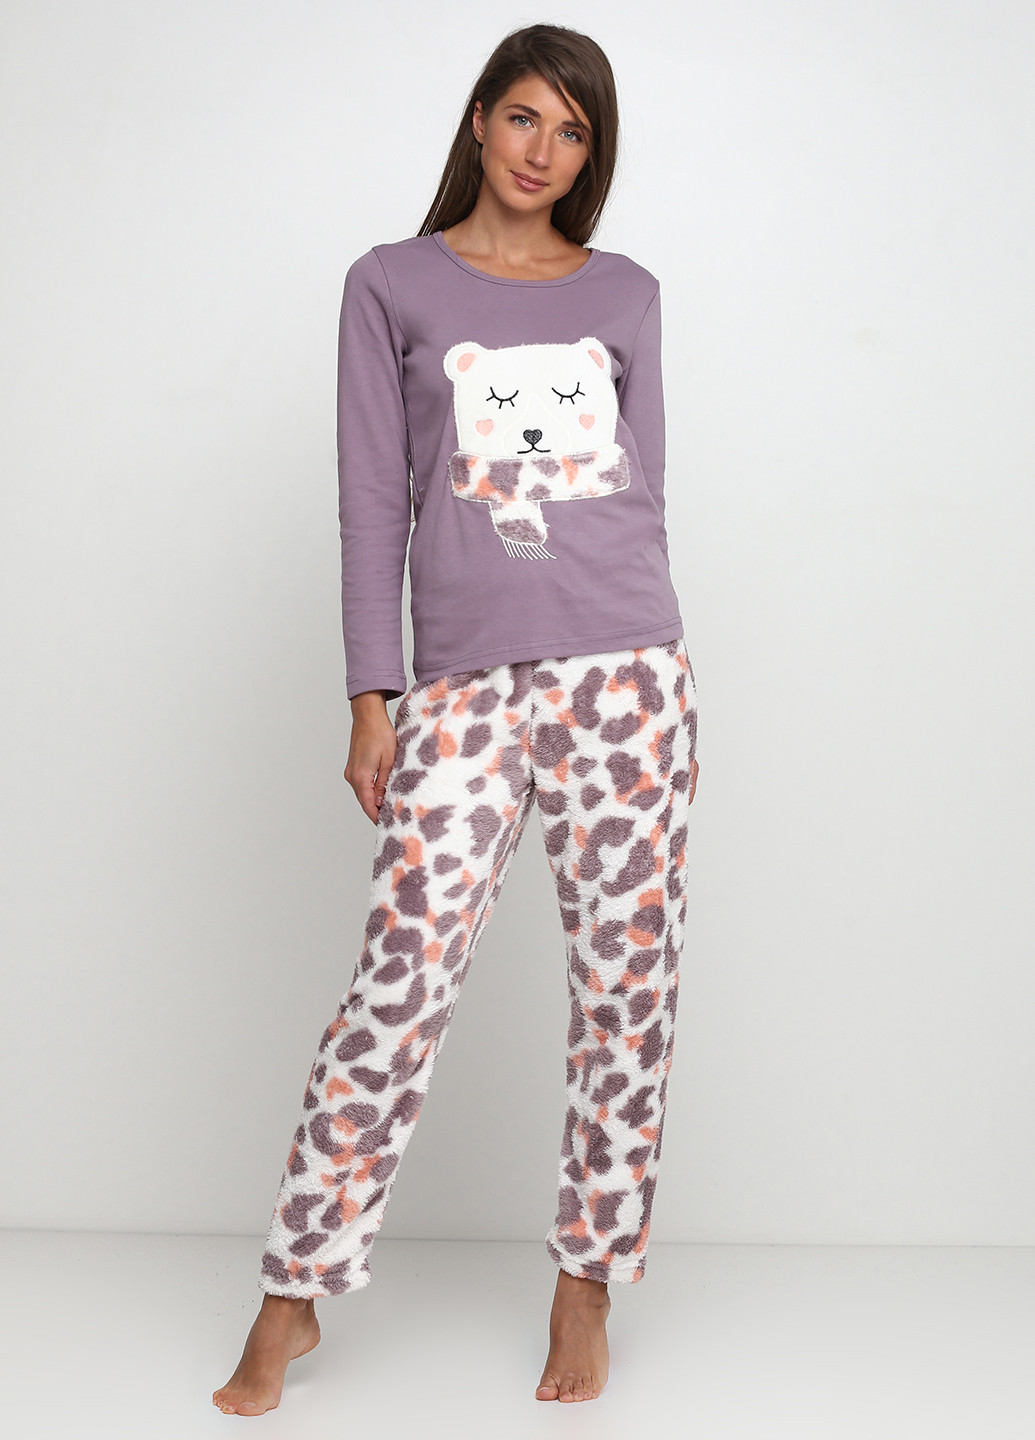 Фиолетовая всесезон пижама (халат, лонгслив, брюки) лонгслив + брюки Sexen